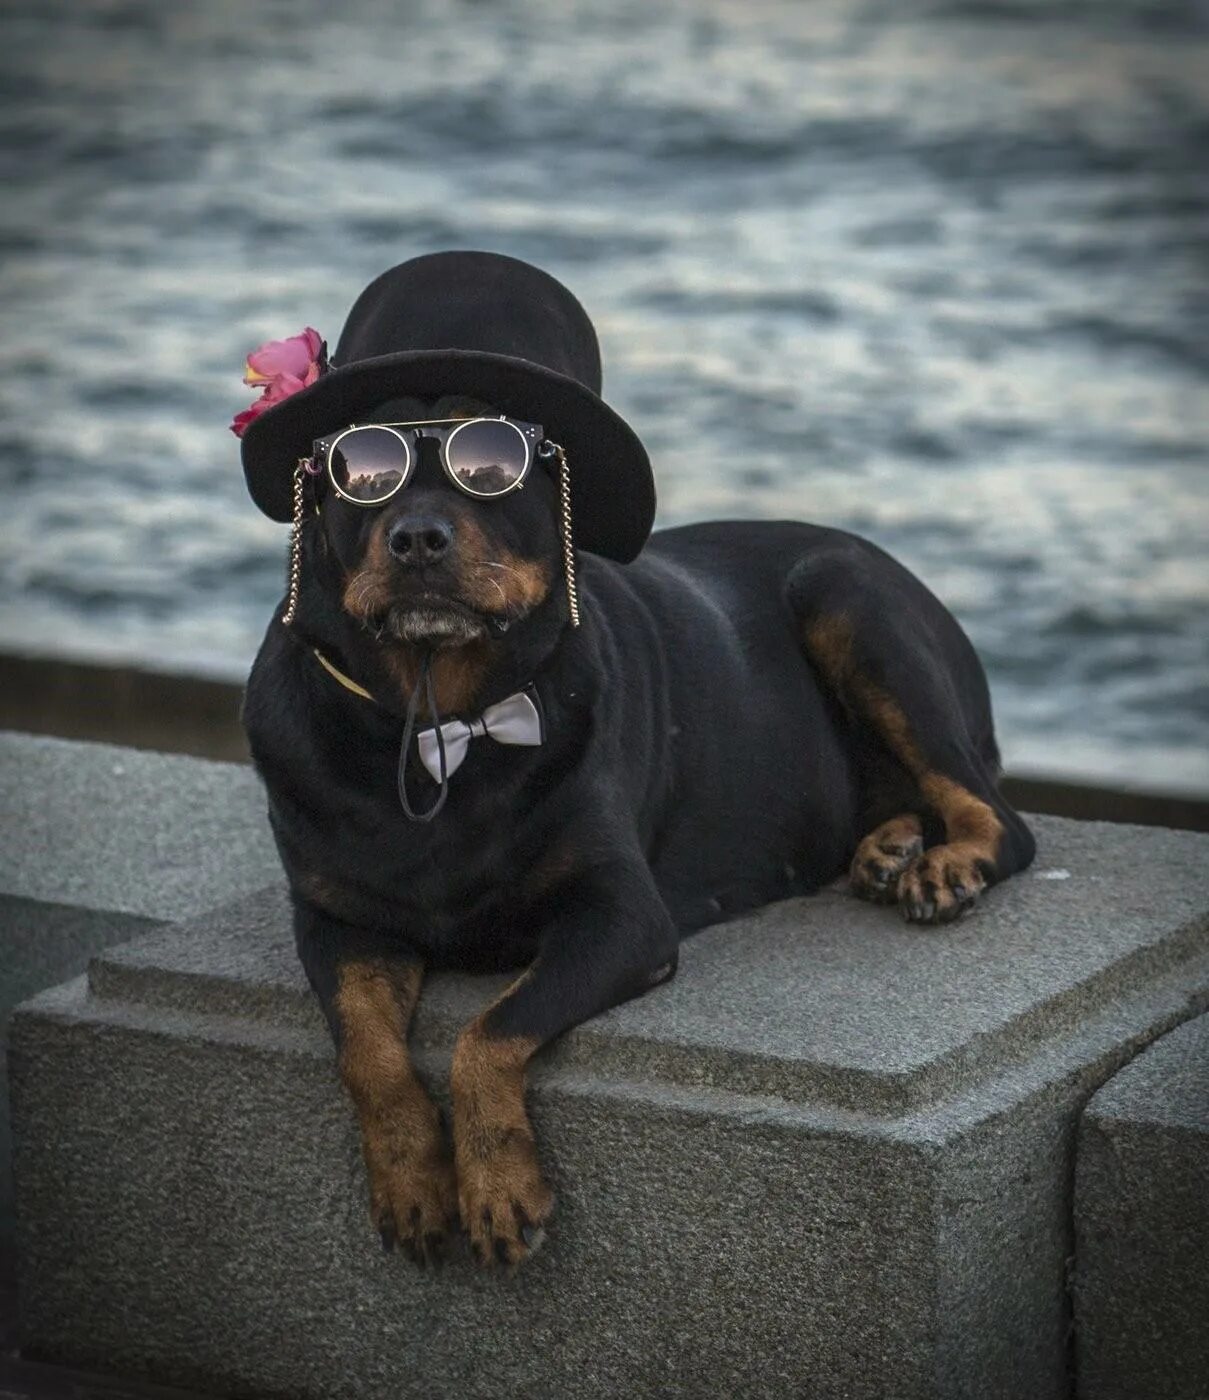 Пес шляпа. Собака в шляпе. Собачка в шляпке. Пес в шляпе. Шляпки для собак.